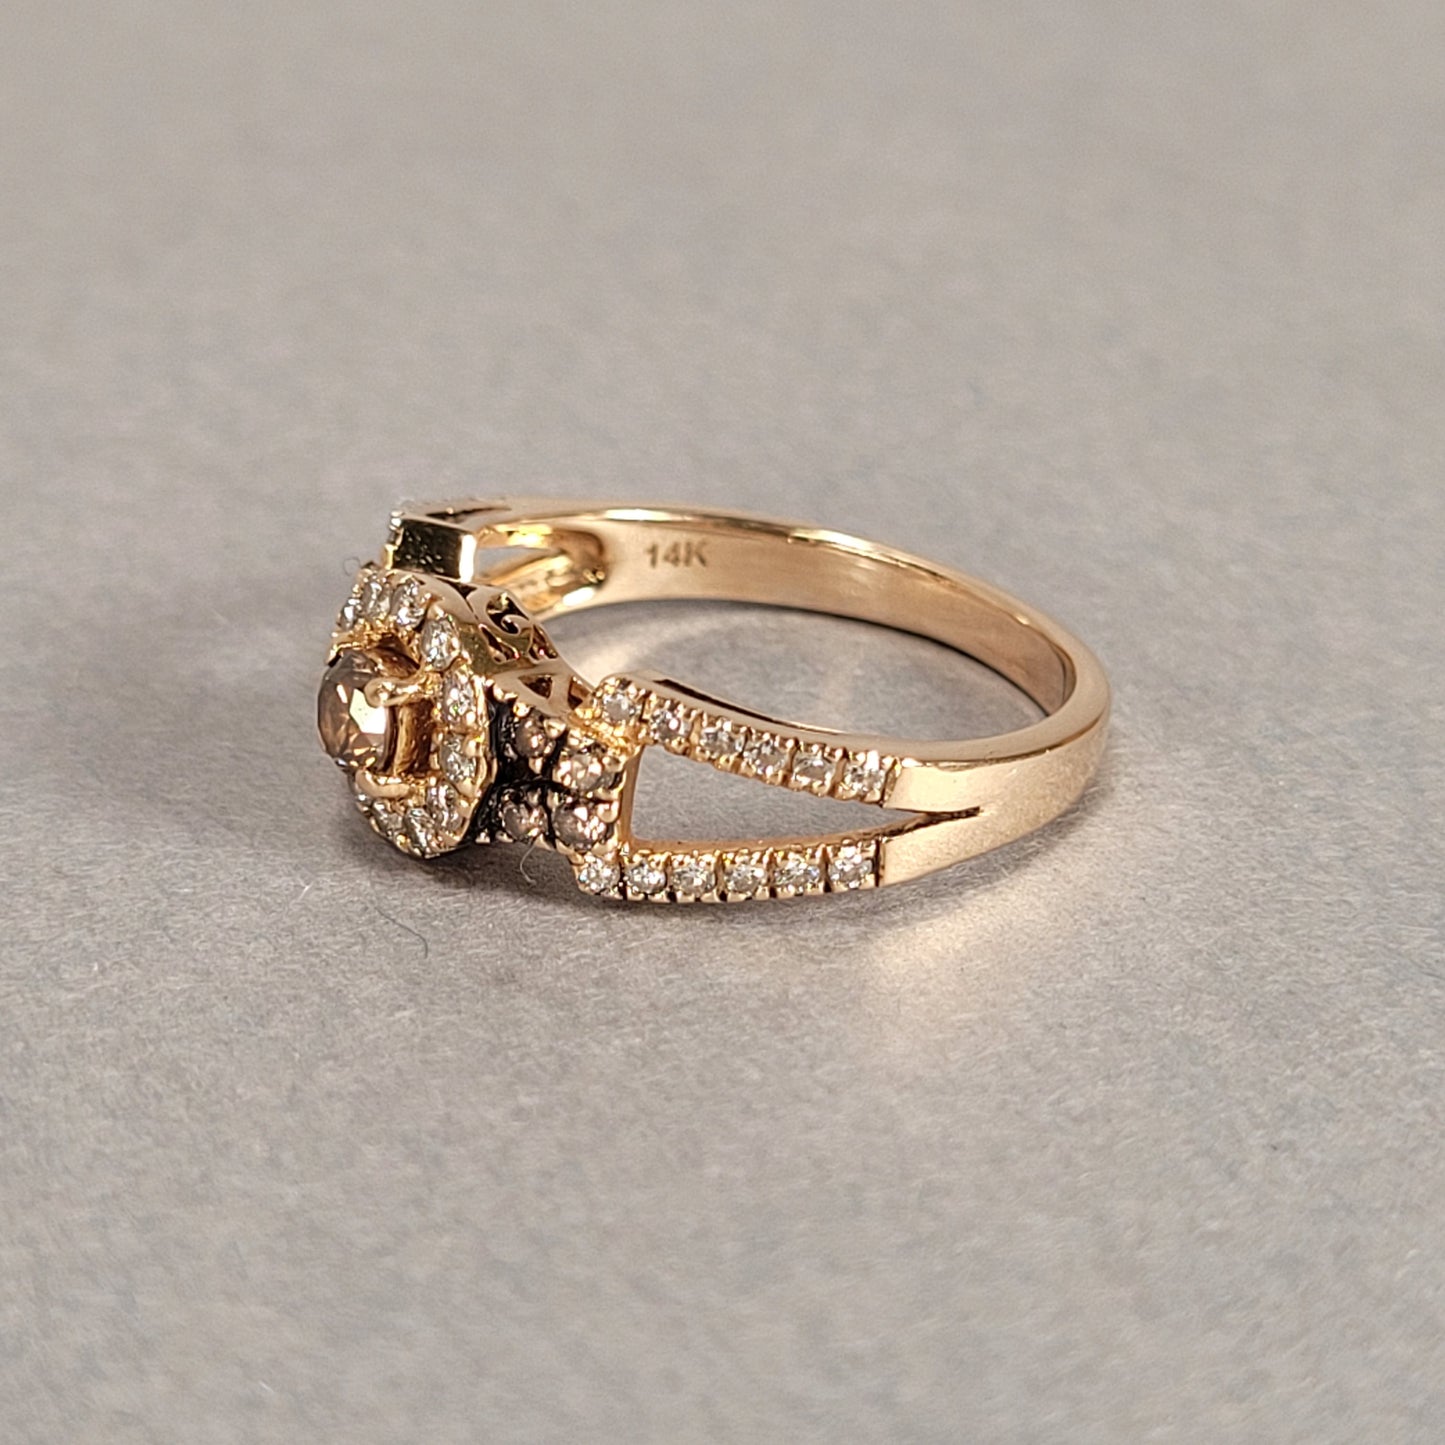 14k Rose Gold & Diamond Ring 3.4g